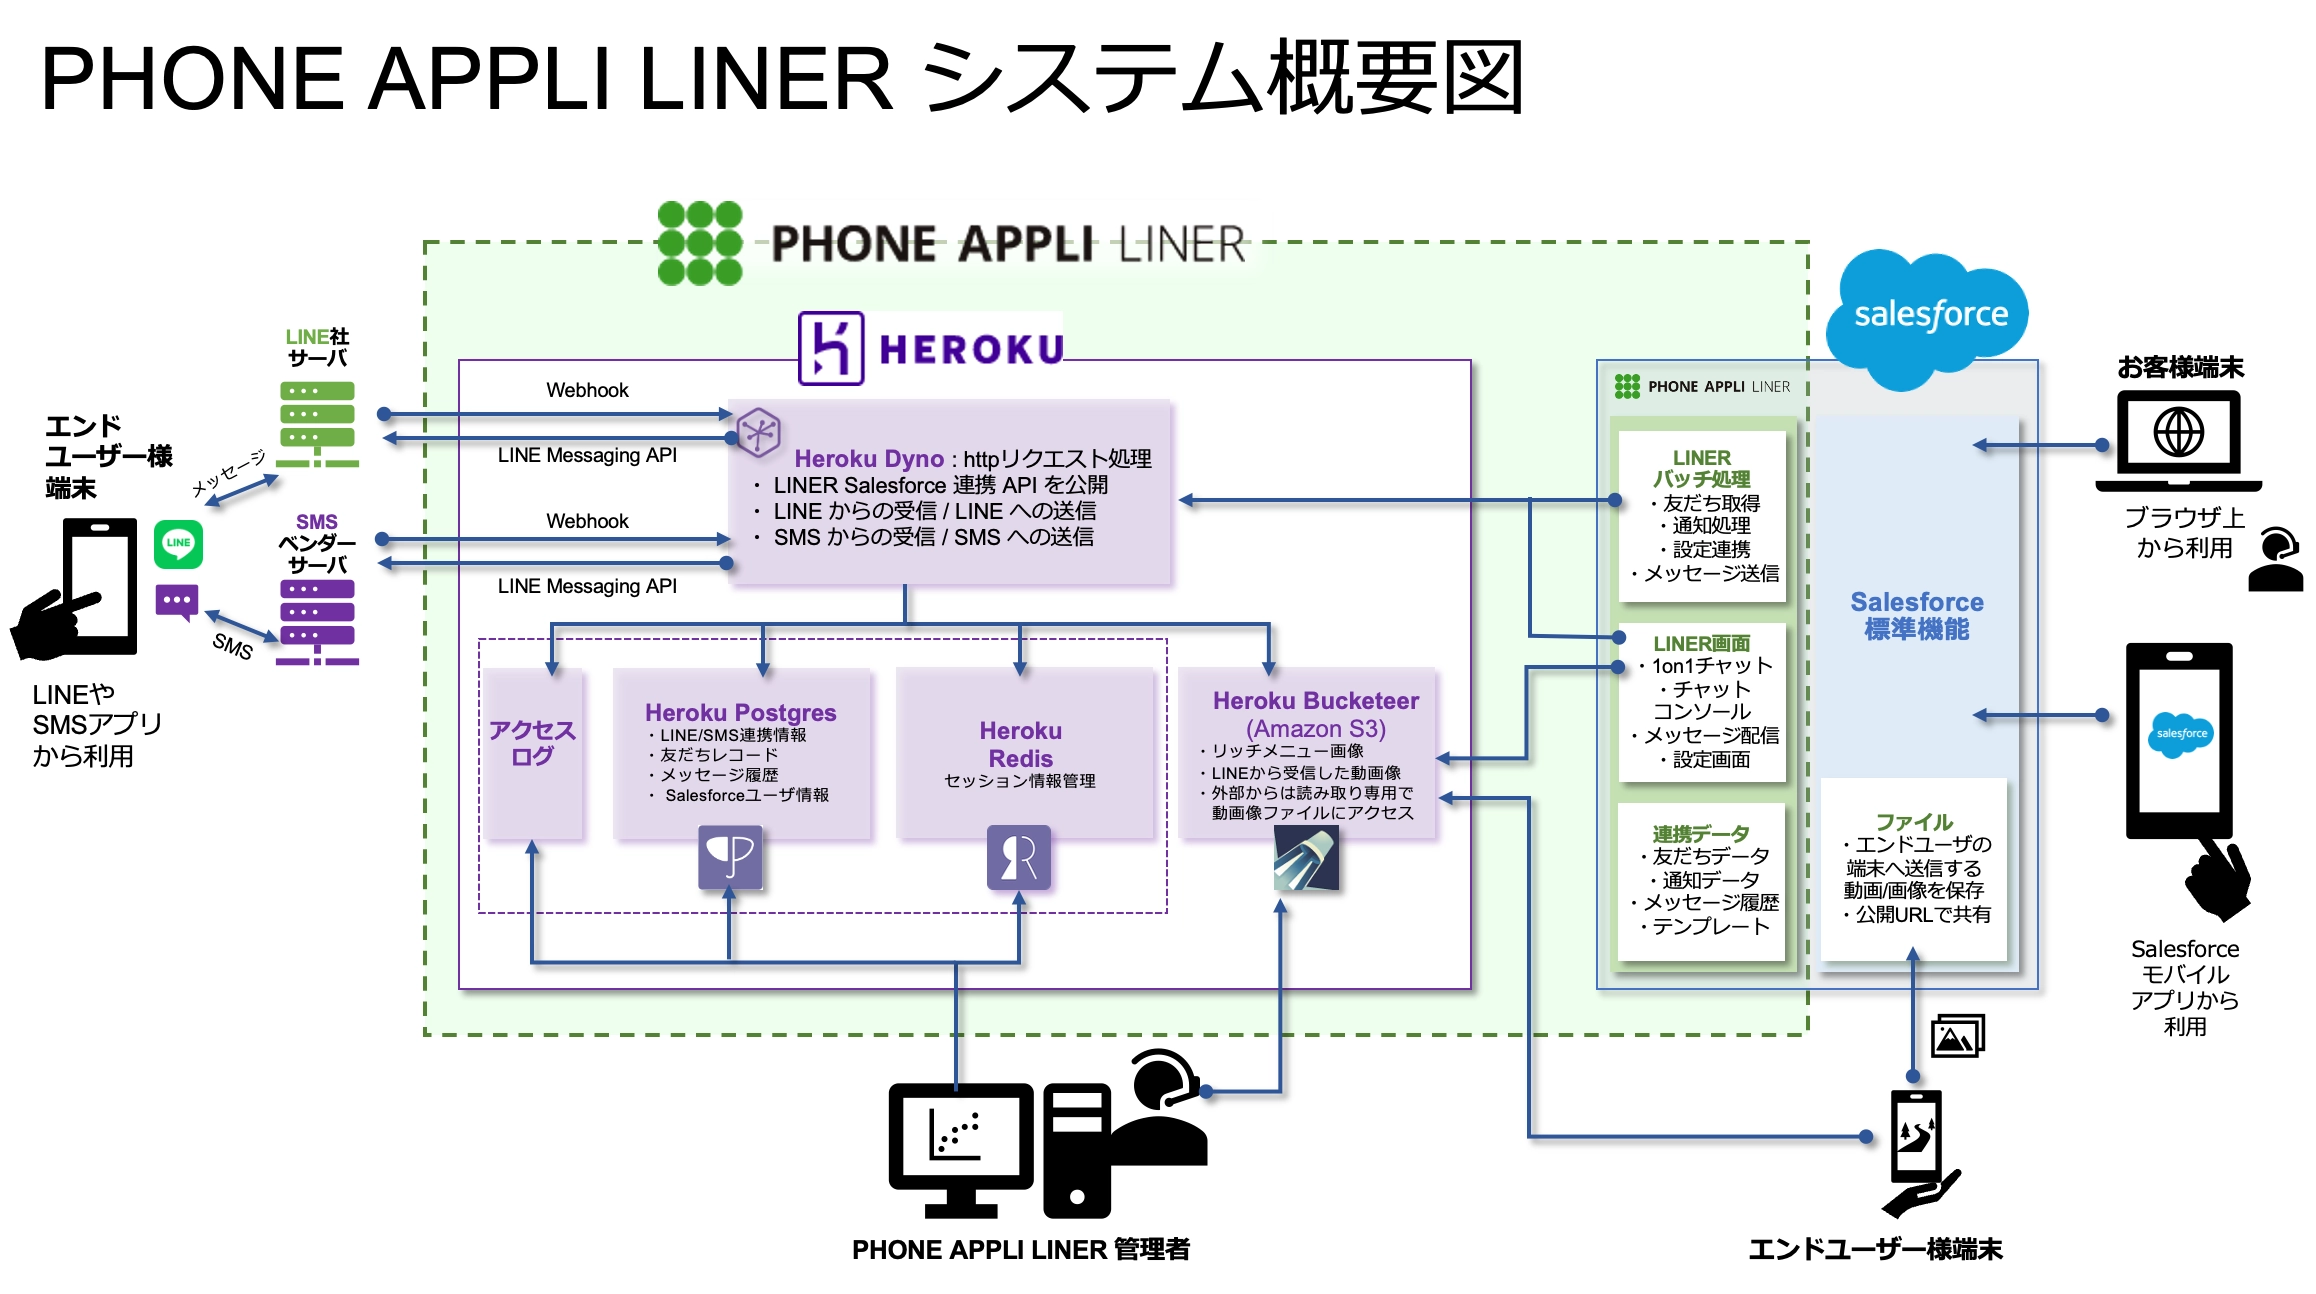 LINE公式アカウント  を通じて「個客」それぞれが求める内容にマッチした情報を的確に提供することで新たな販路開拓・営業力強化に繋げる「PHONE APPLI LINER」 システムの解説